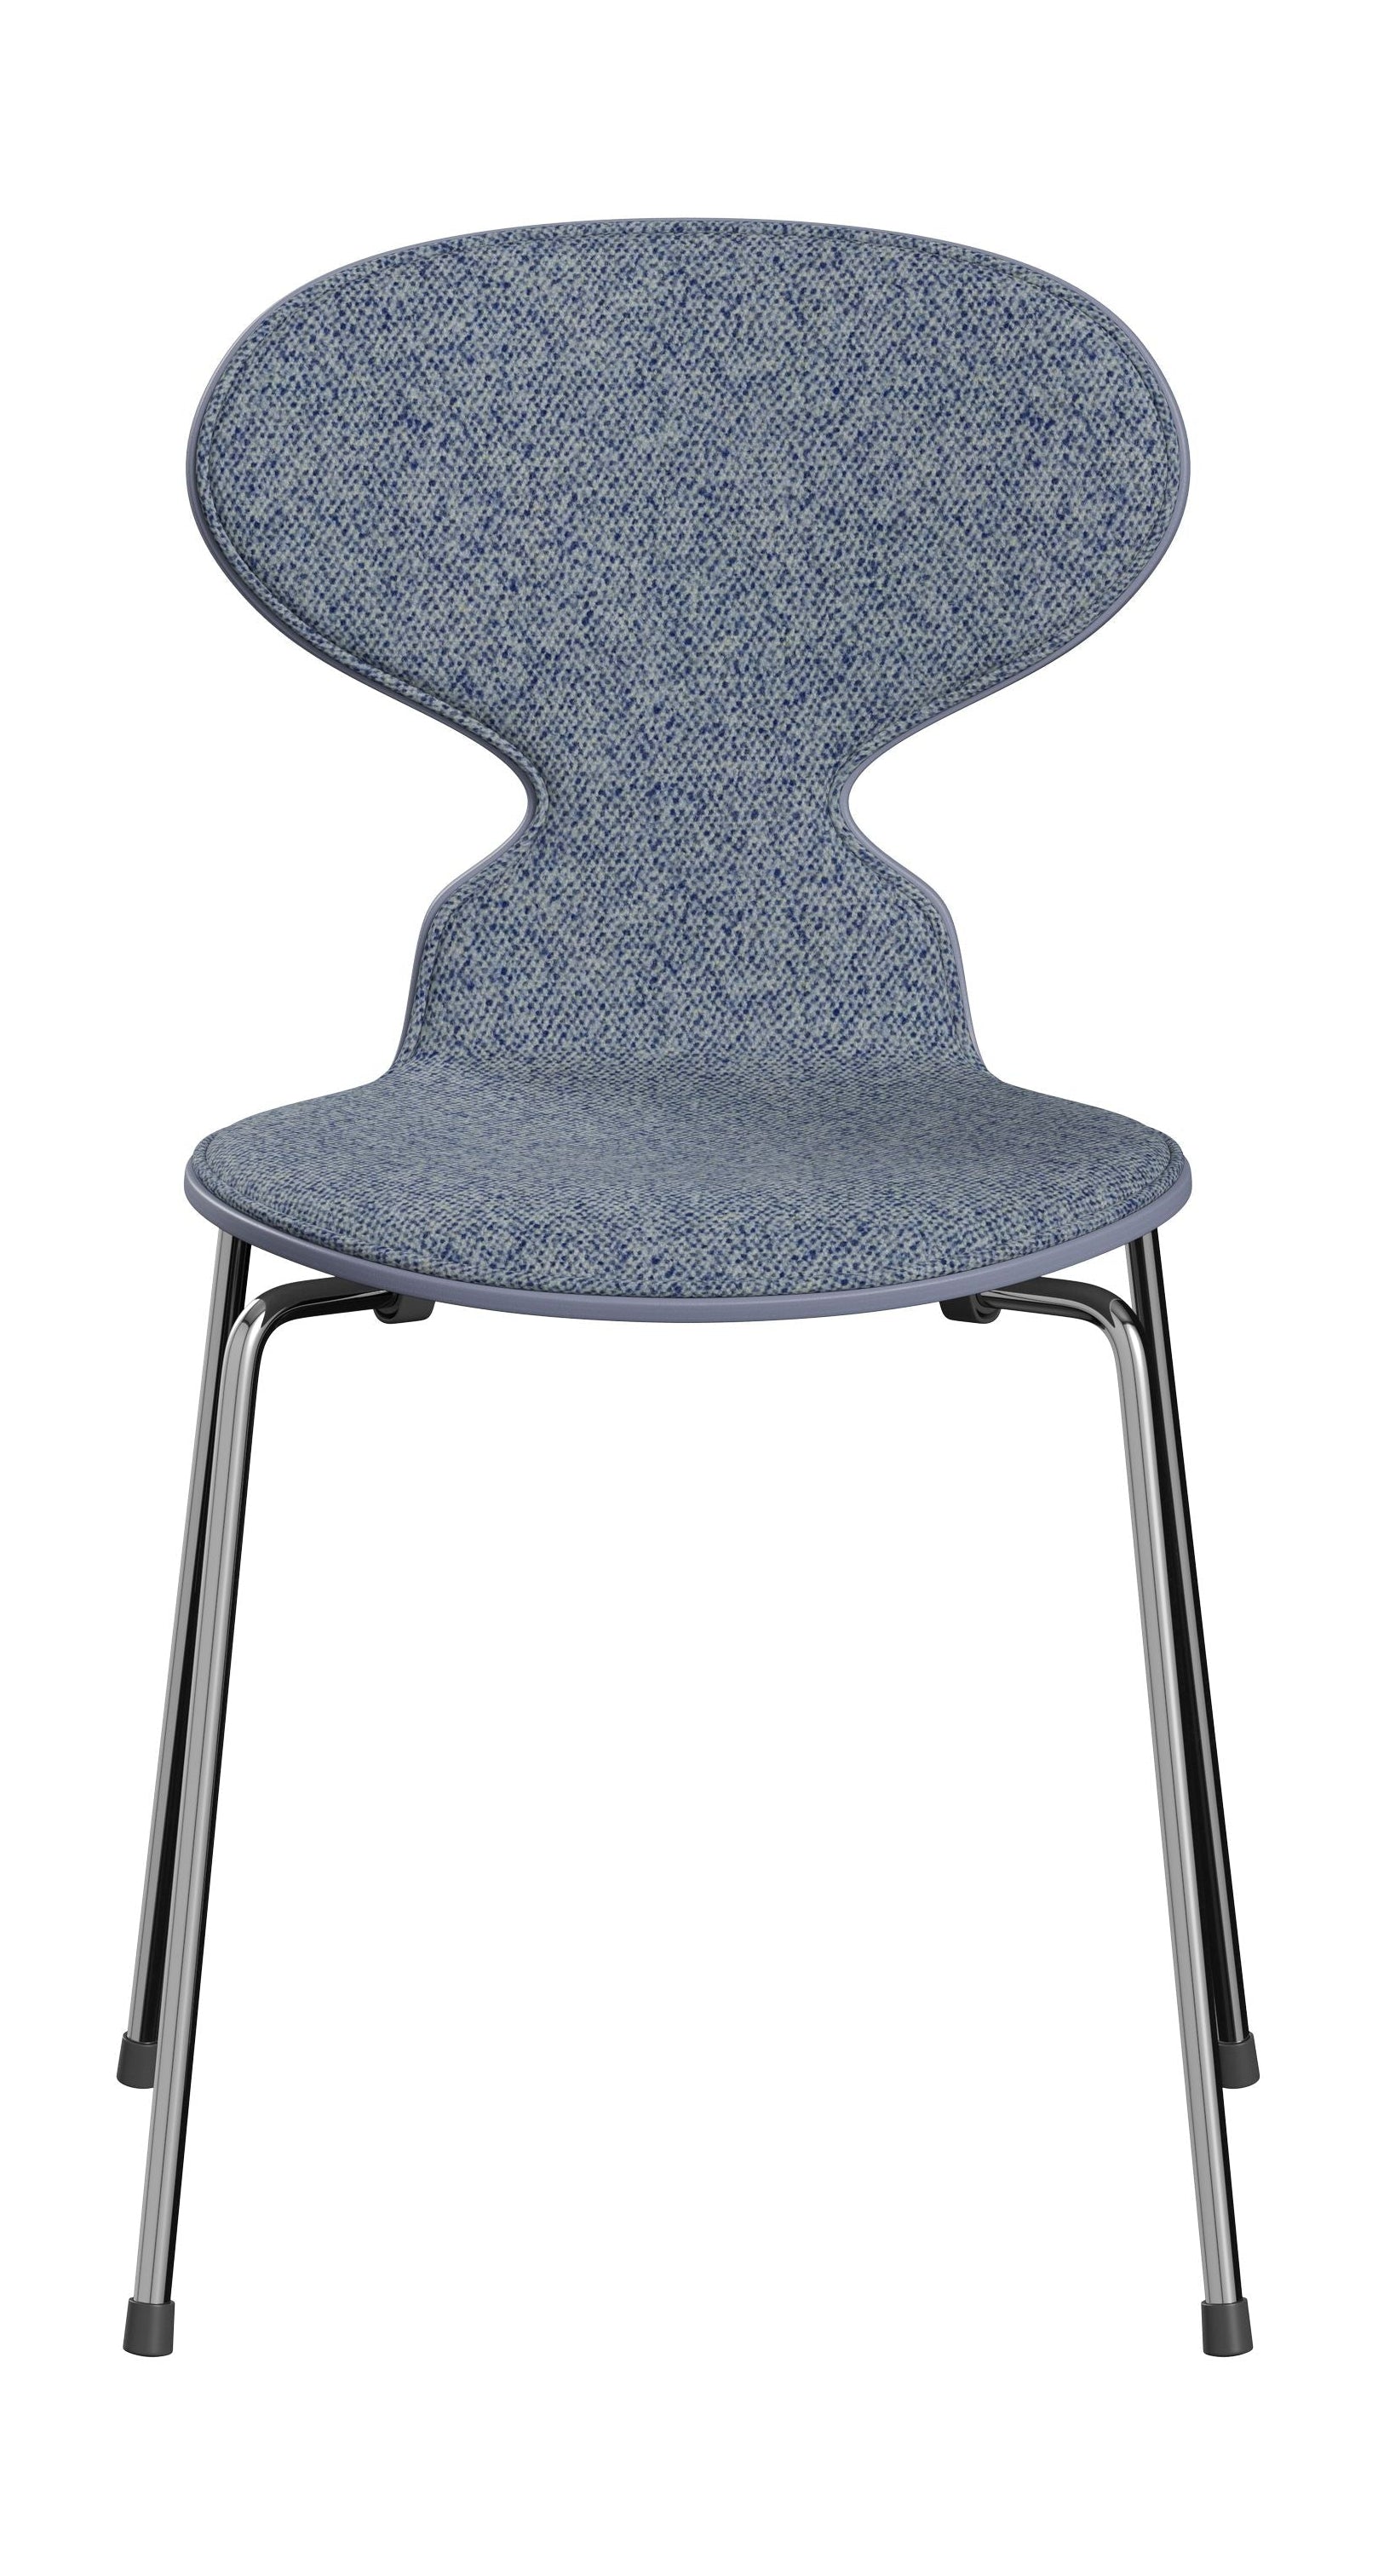 Fritz Hansen 3101 Ant stol foran polstret, skall: farget finér lavendel blå, møbeltrekk: vanir tekstil lyseblå, base: stål/krom